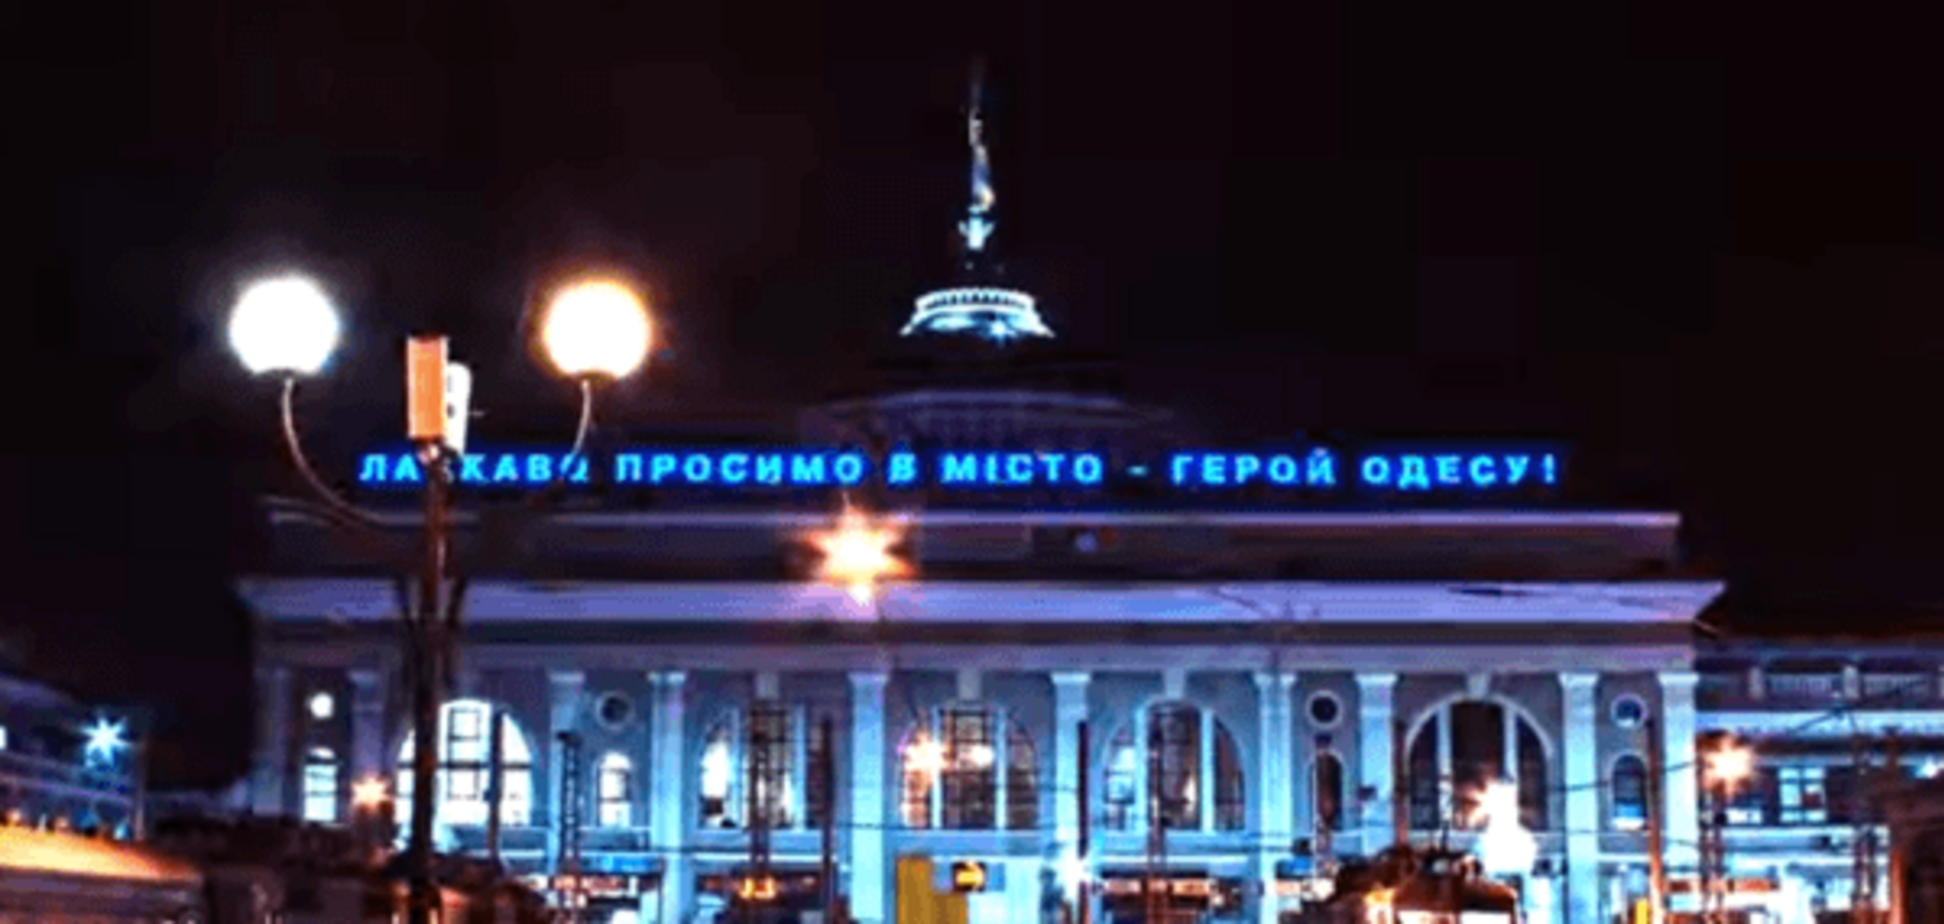 Завораживает! В сети появилось яркое видео о красоте ночной Одессы